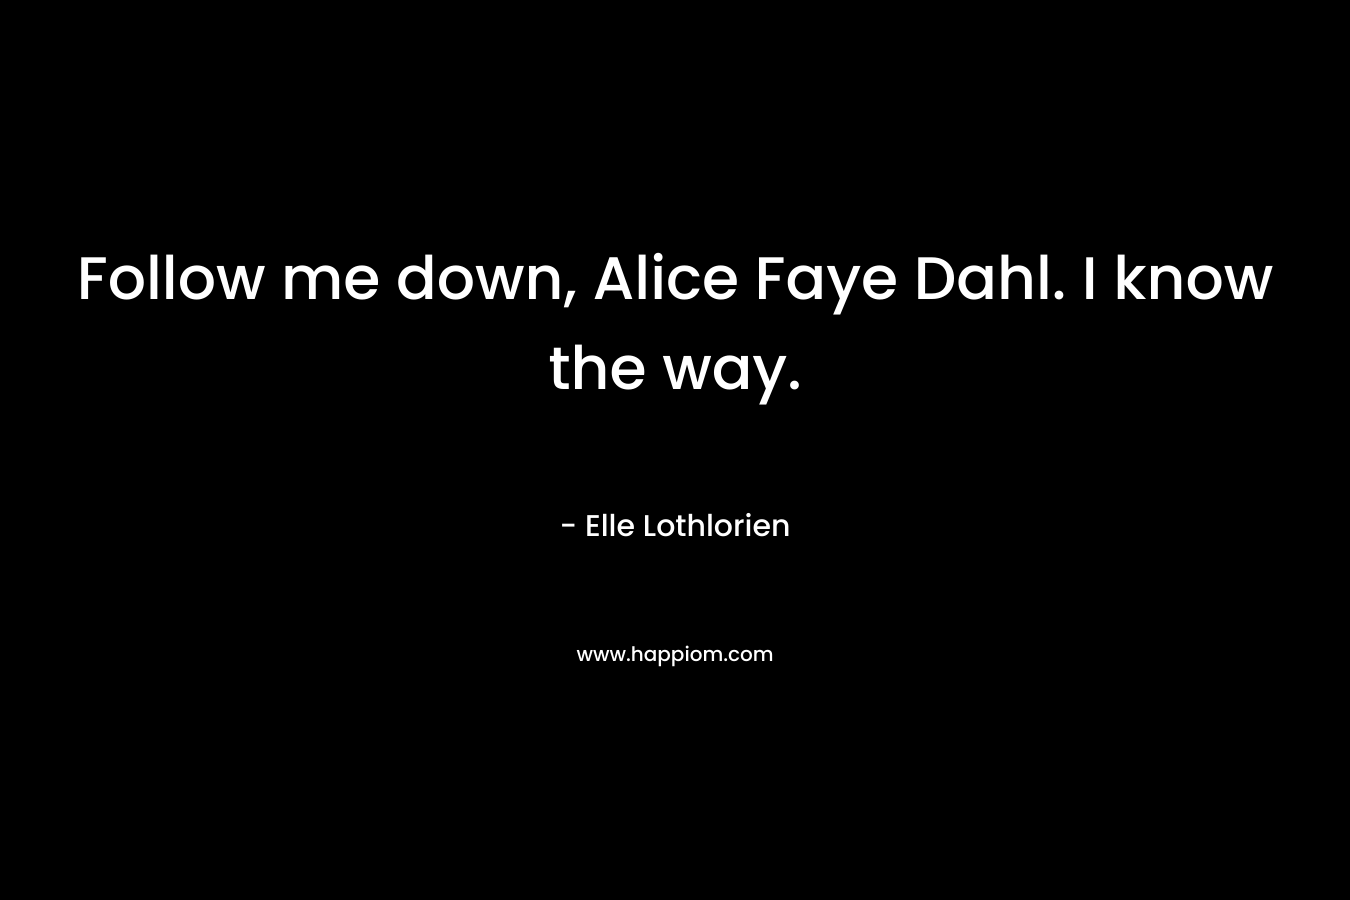 Follow me down, Alice Faye Dahl. I know the way. – Elle Lothlorien